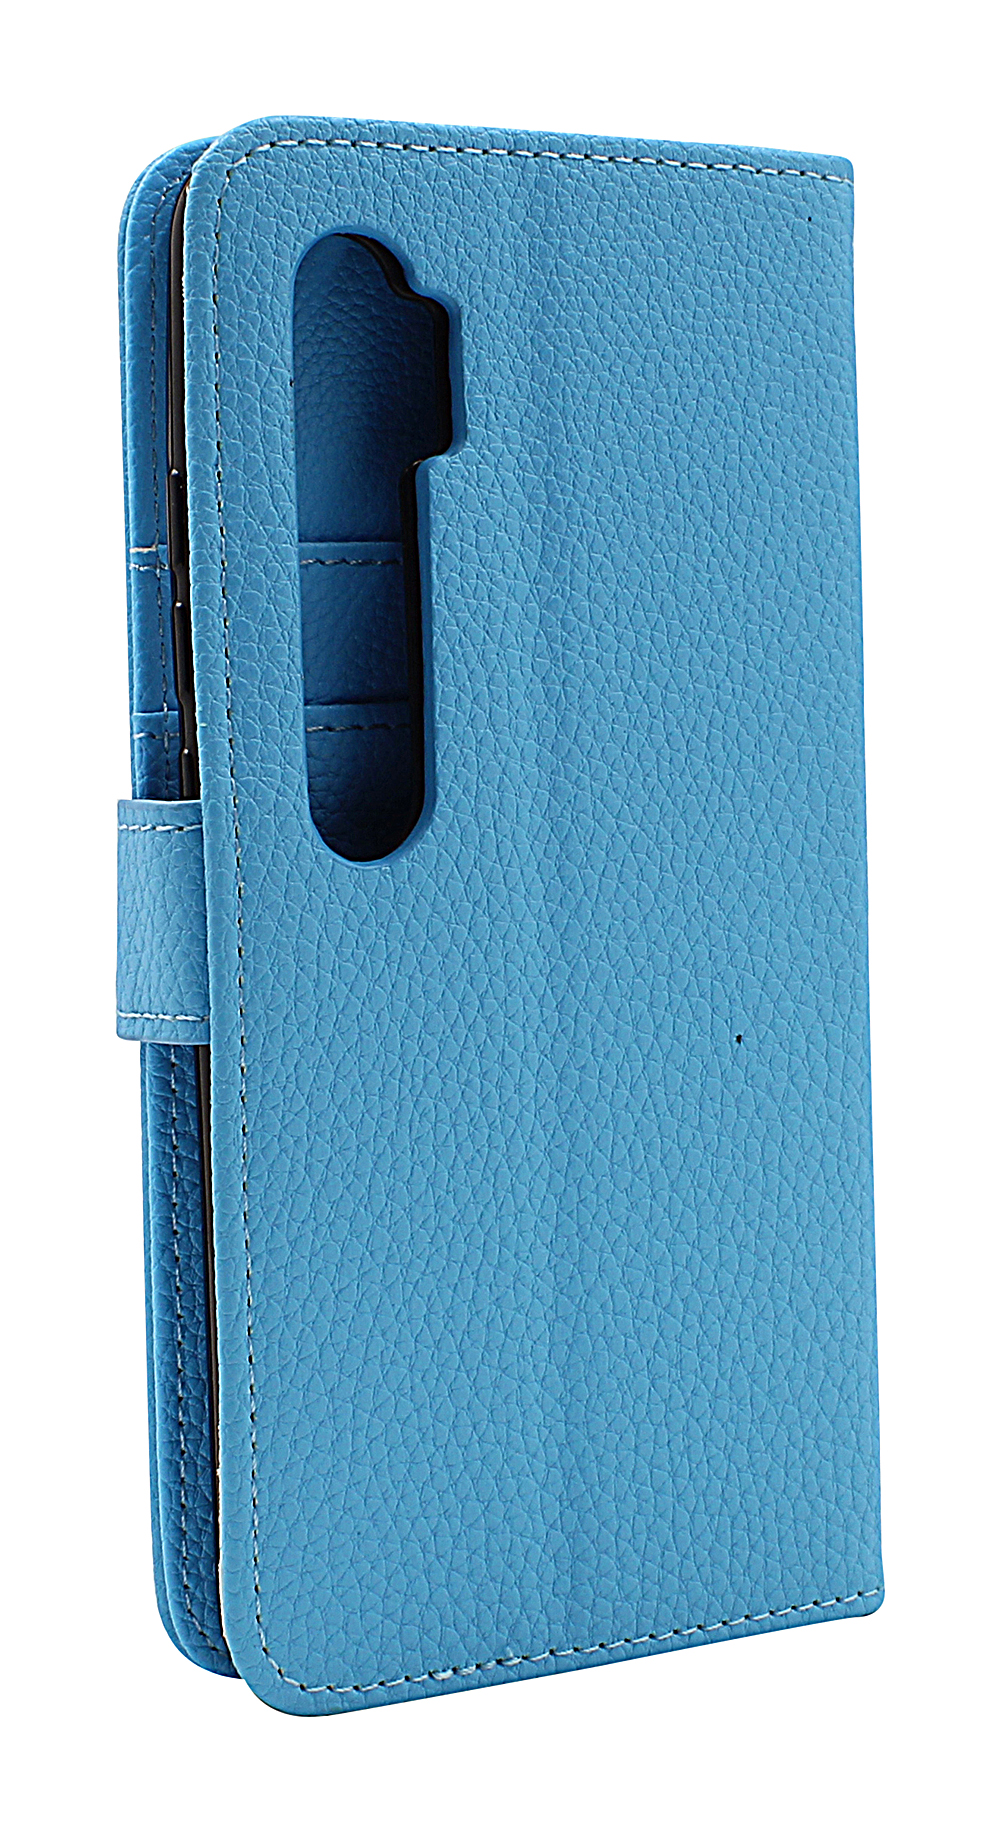 New Standcase Wallet Xiaomi Mi Note 10 Lite